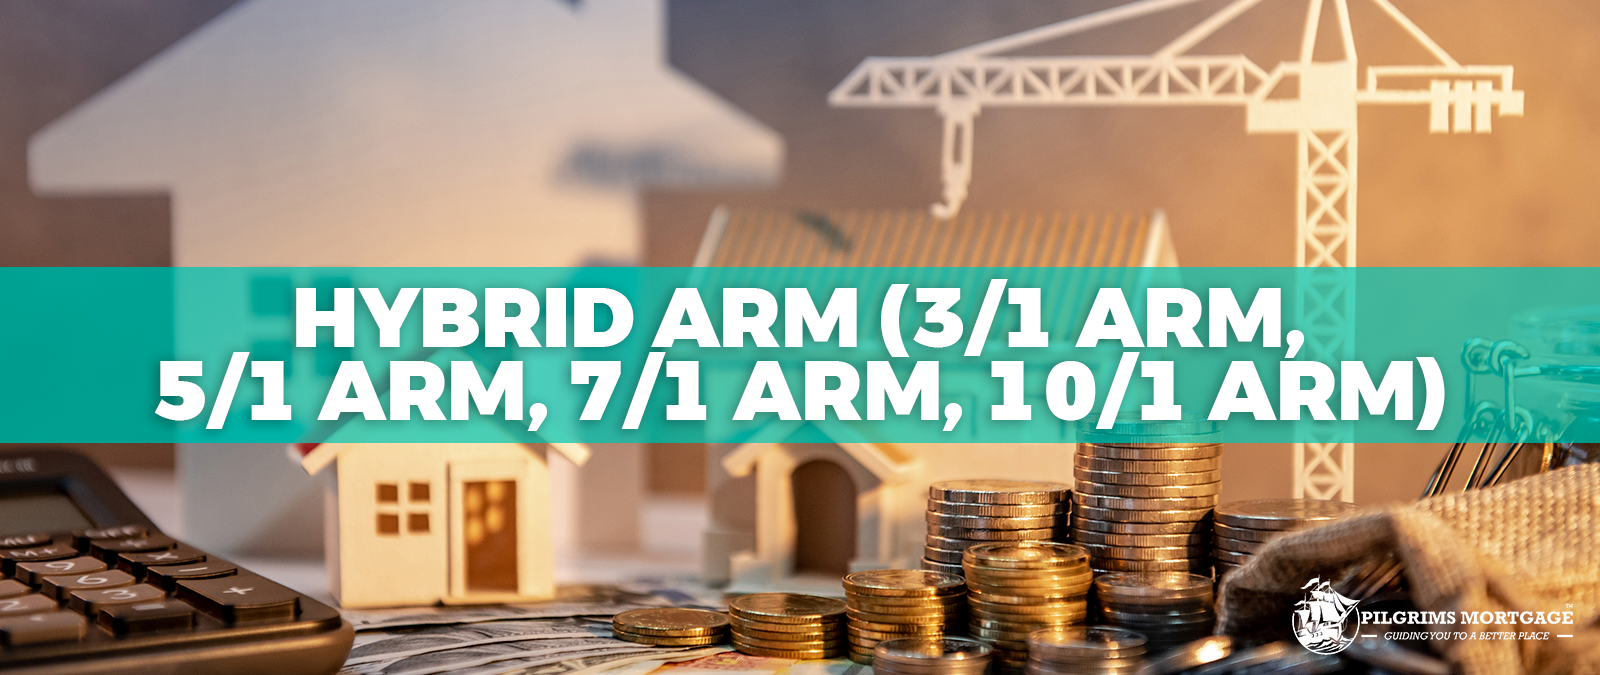 HYBRID ARM (3/1 ARM, 5/1 ARM, 7/1 ARM, 10/1 ARM)